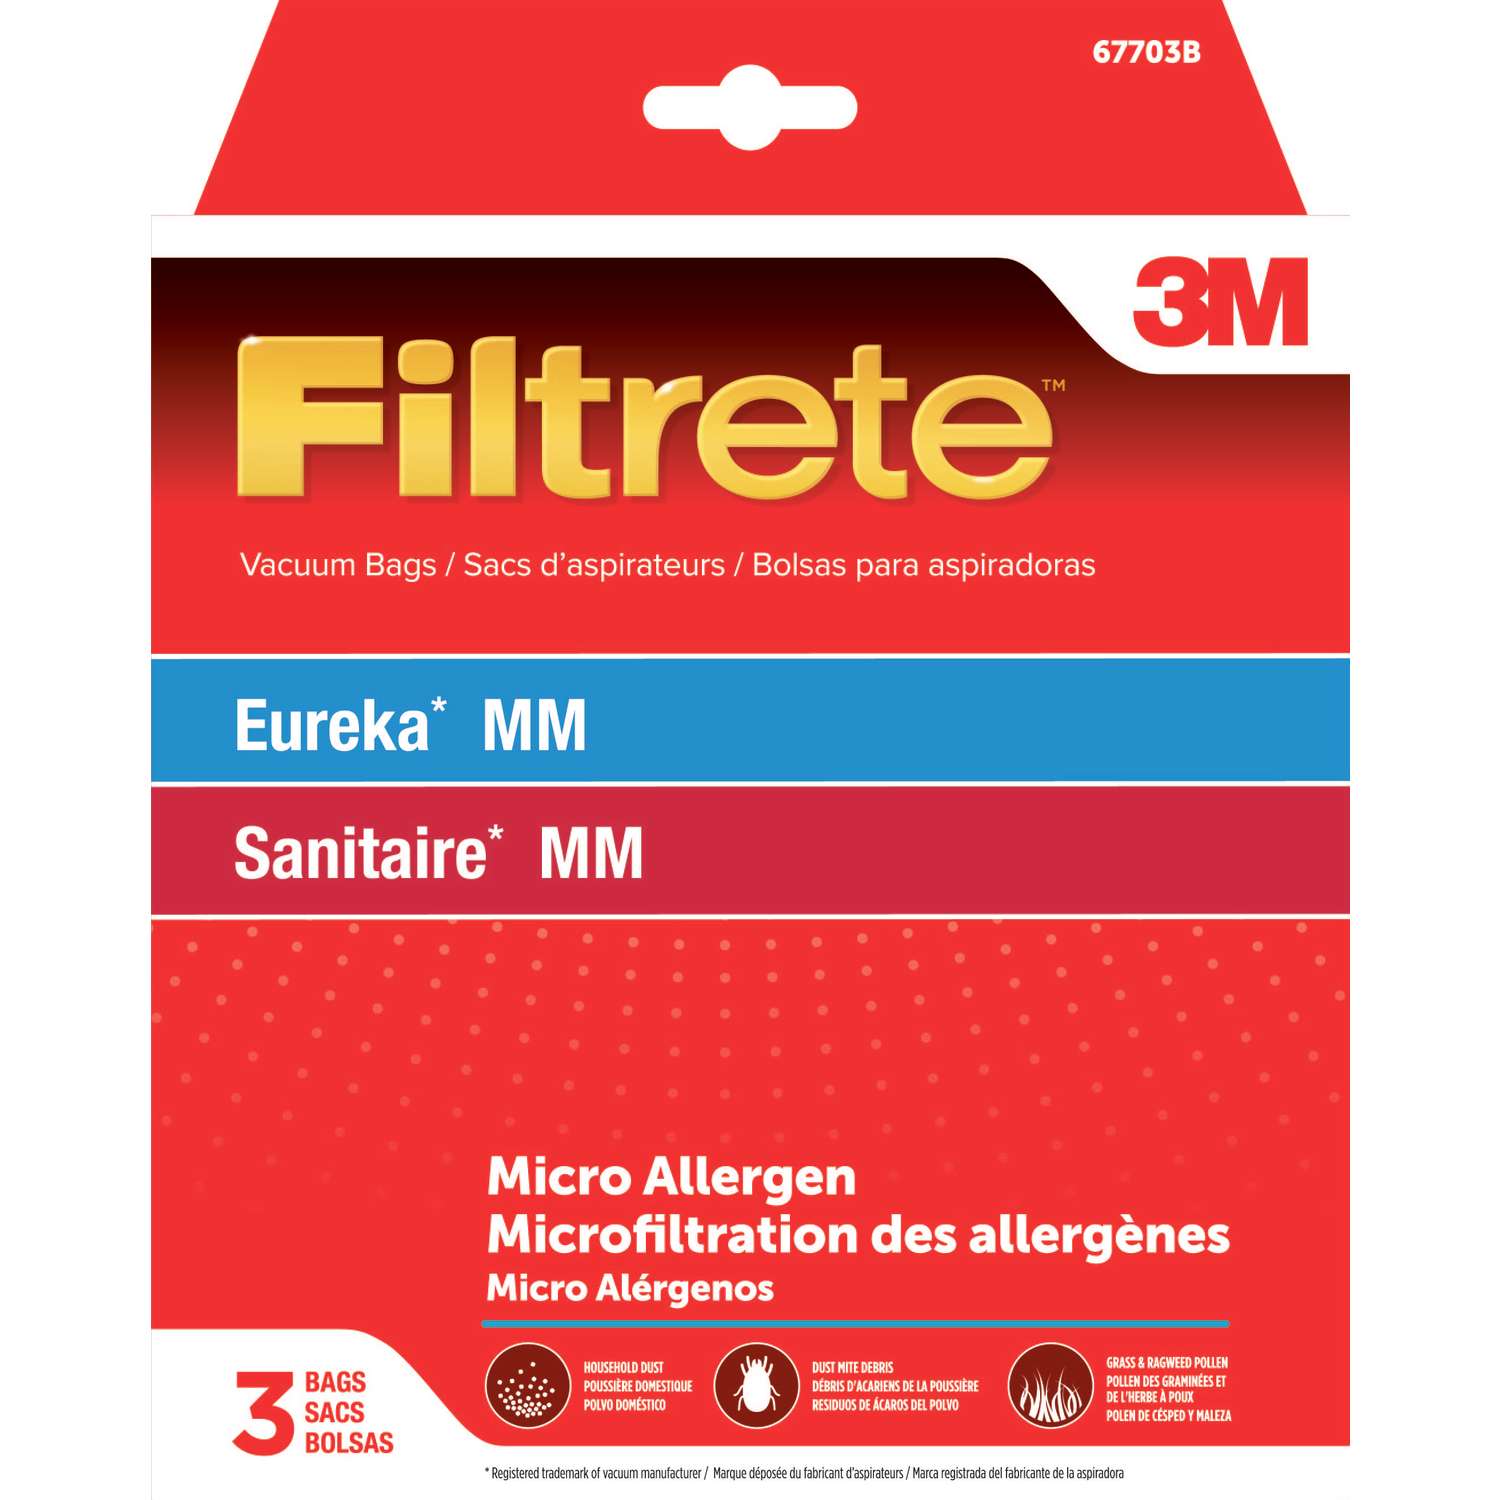 Eureka MM Sanitaire MM , Details about   FILTRETE 3M Vacuum Bags Fits 